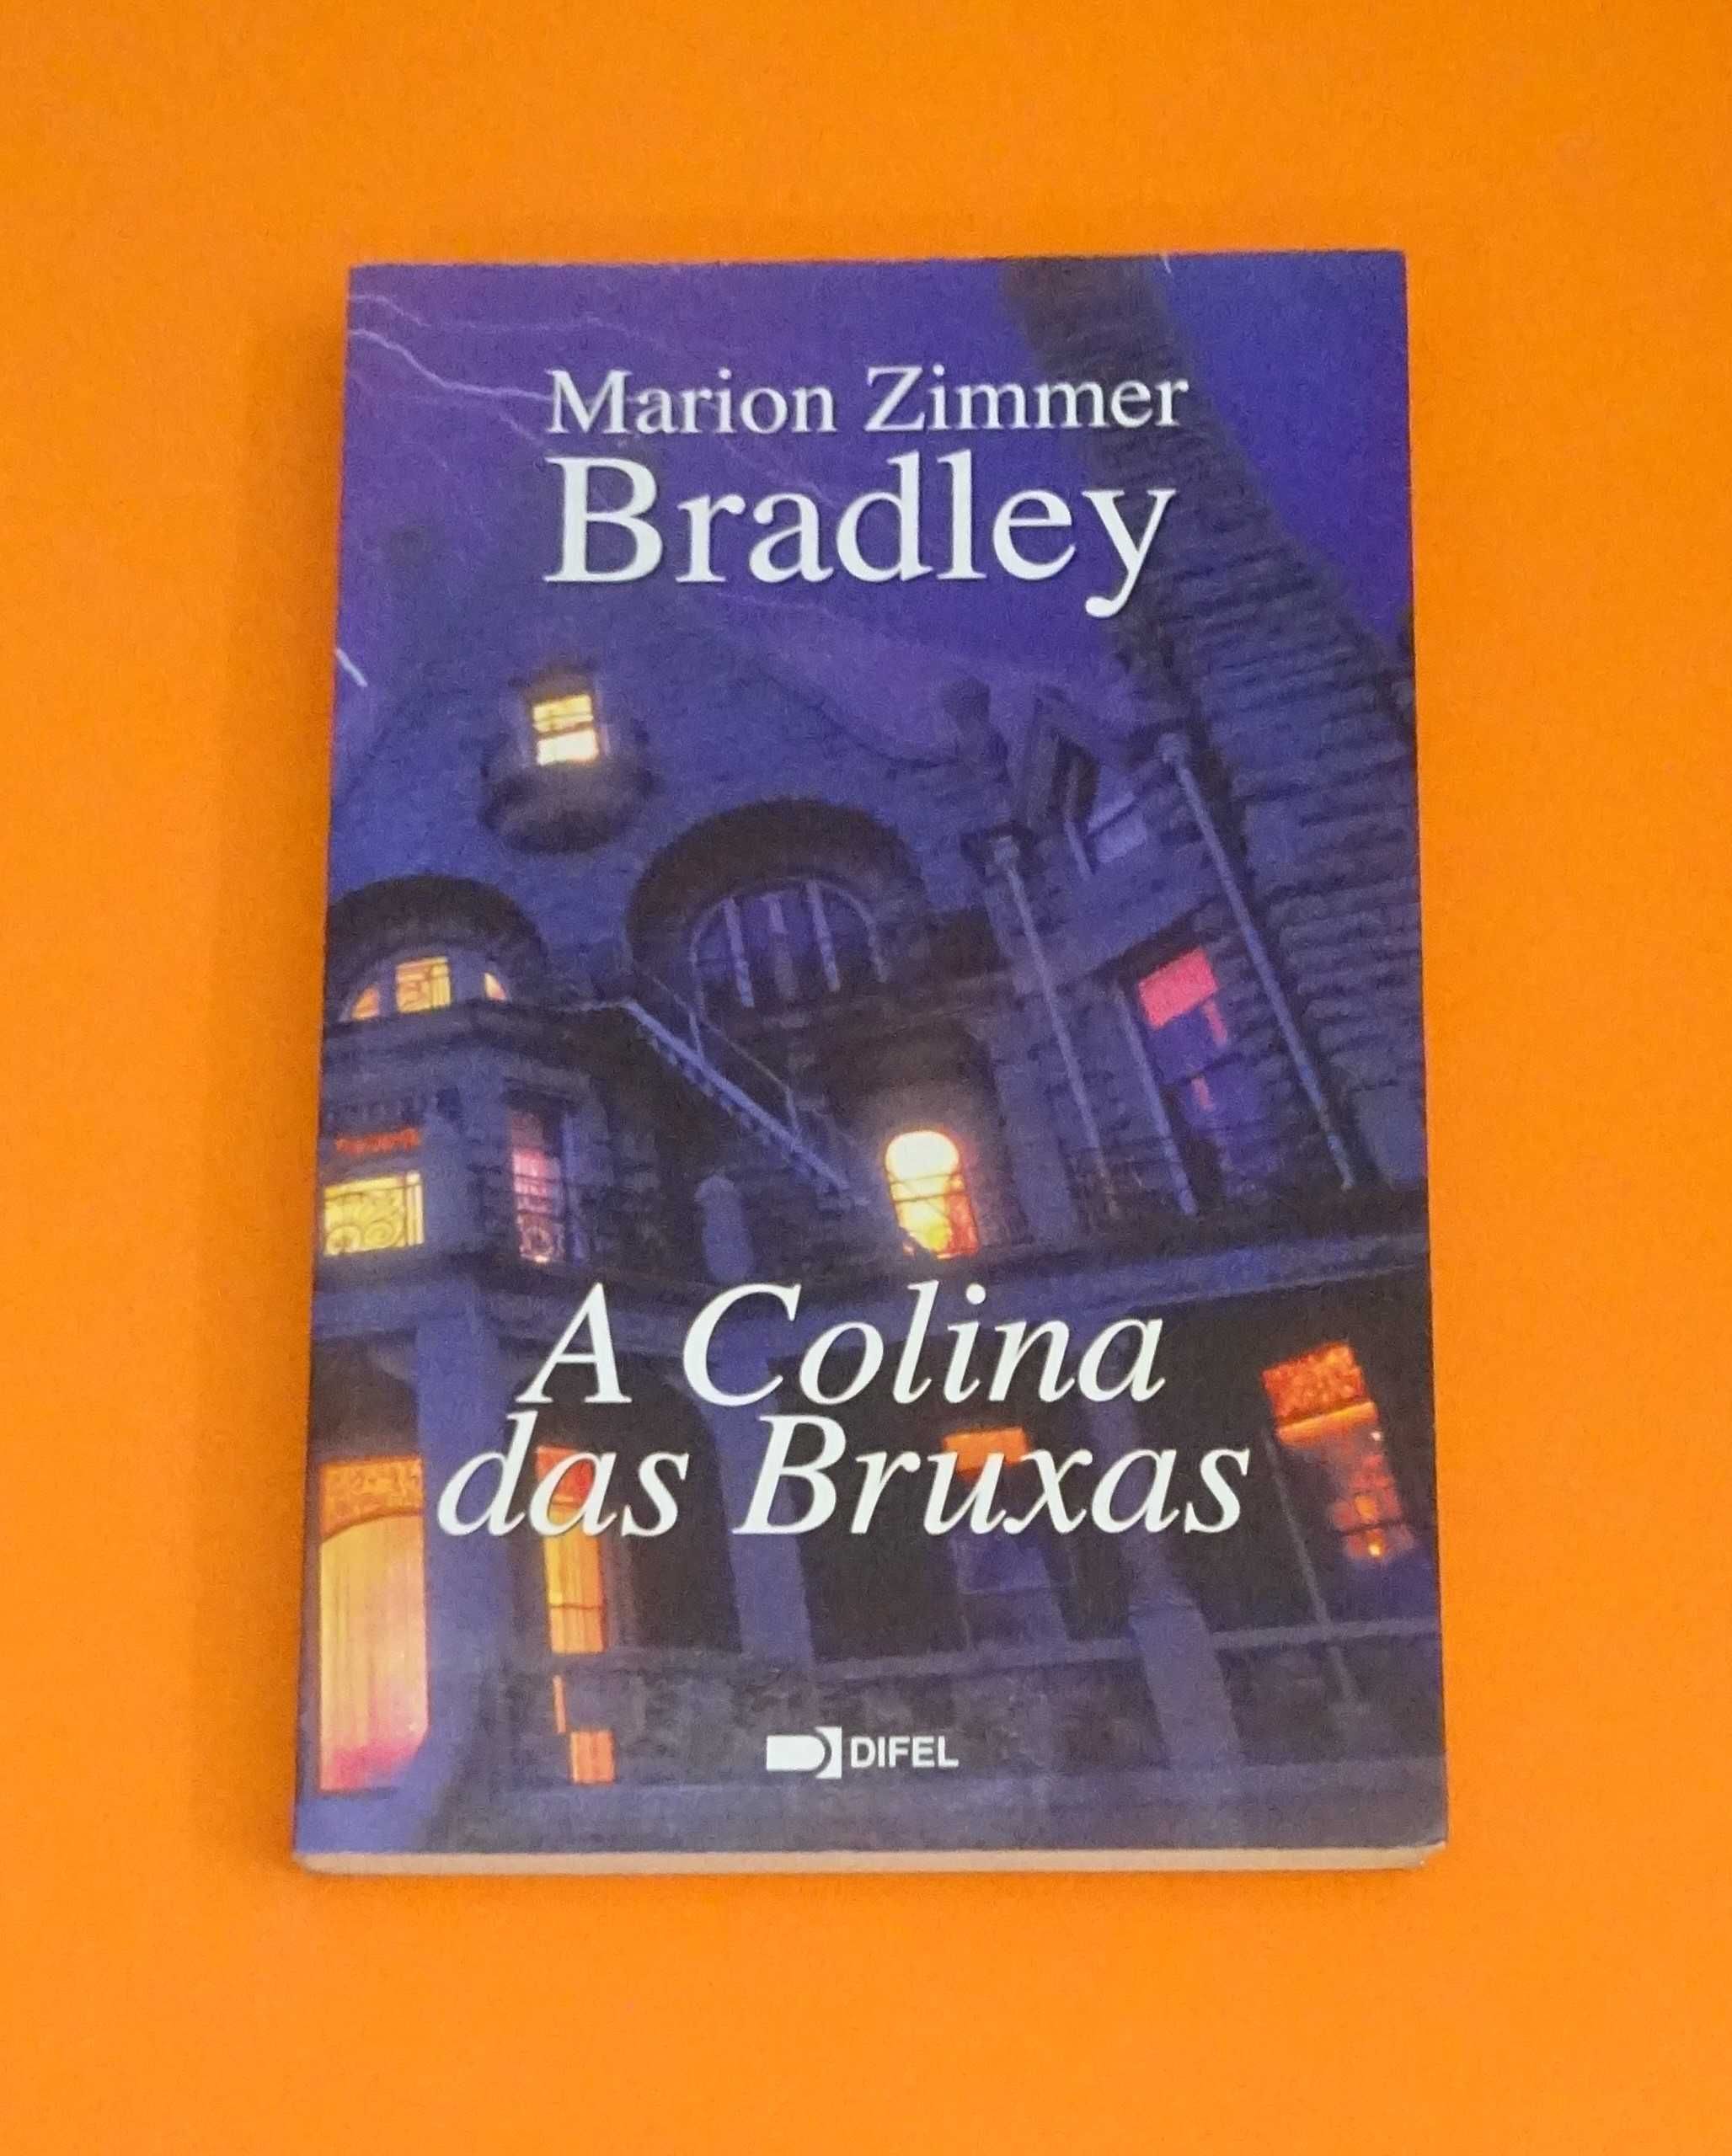 A Colina das Bruxas - Marion Zimmer Bradley